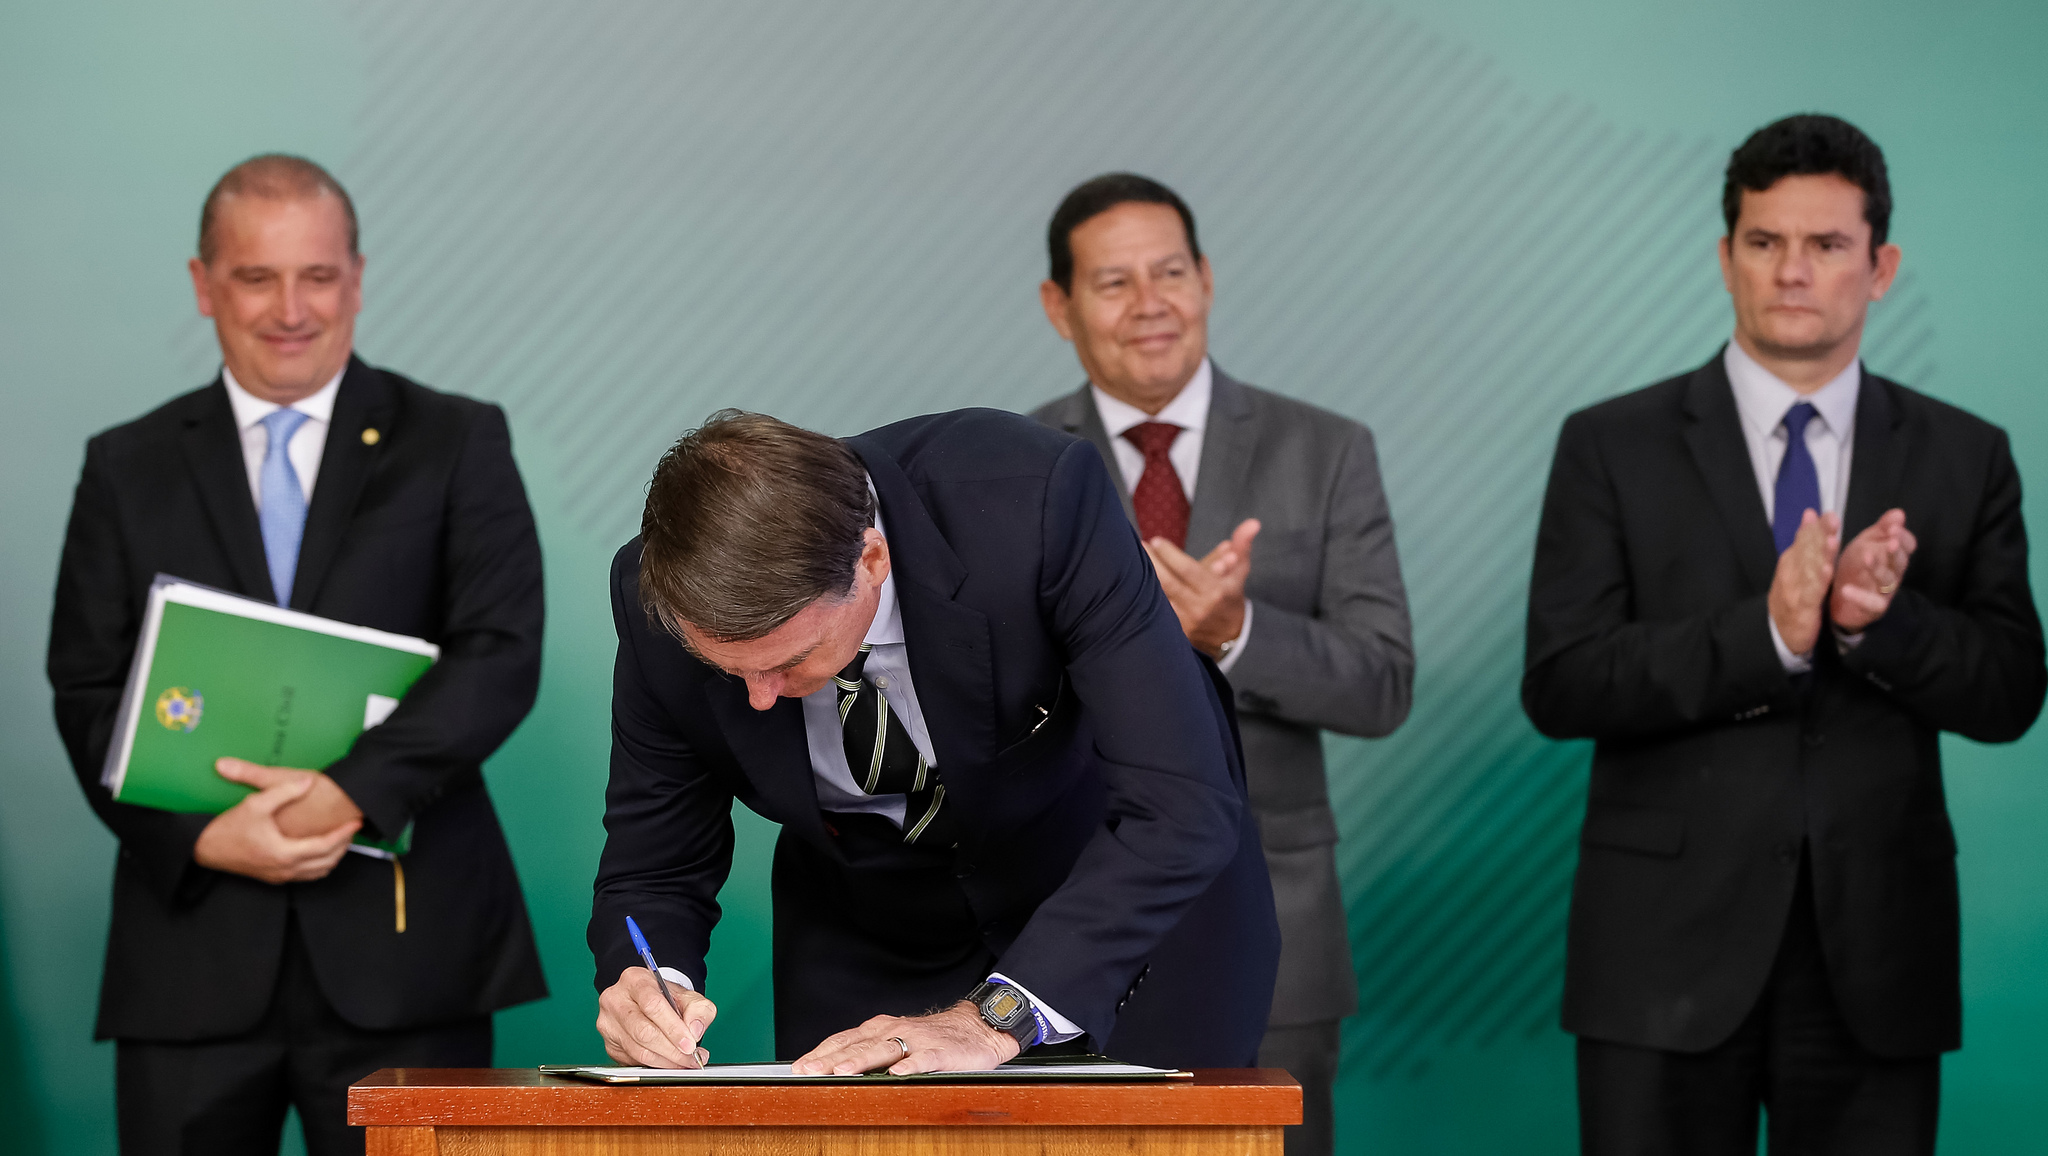 Assinatura solene de decreto sobre posse de armas 
(Brasília - DF, 15/01/2019) Presidente da República, Jair Bolsonaro assina decreto.

Foto: Alan Santos/PR